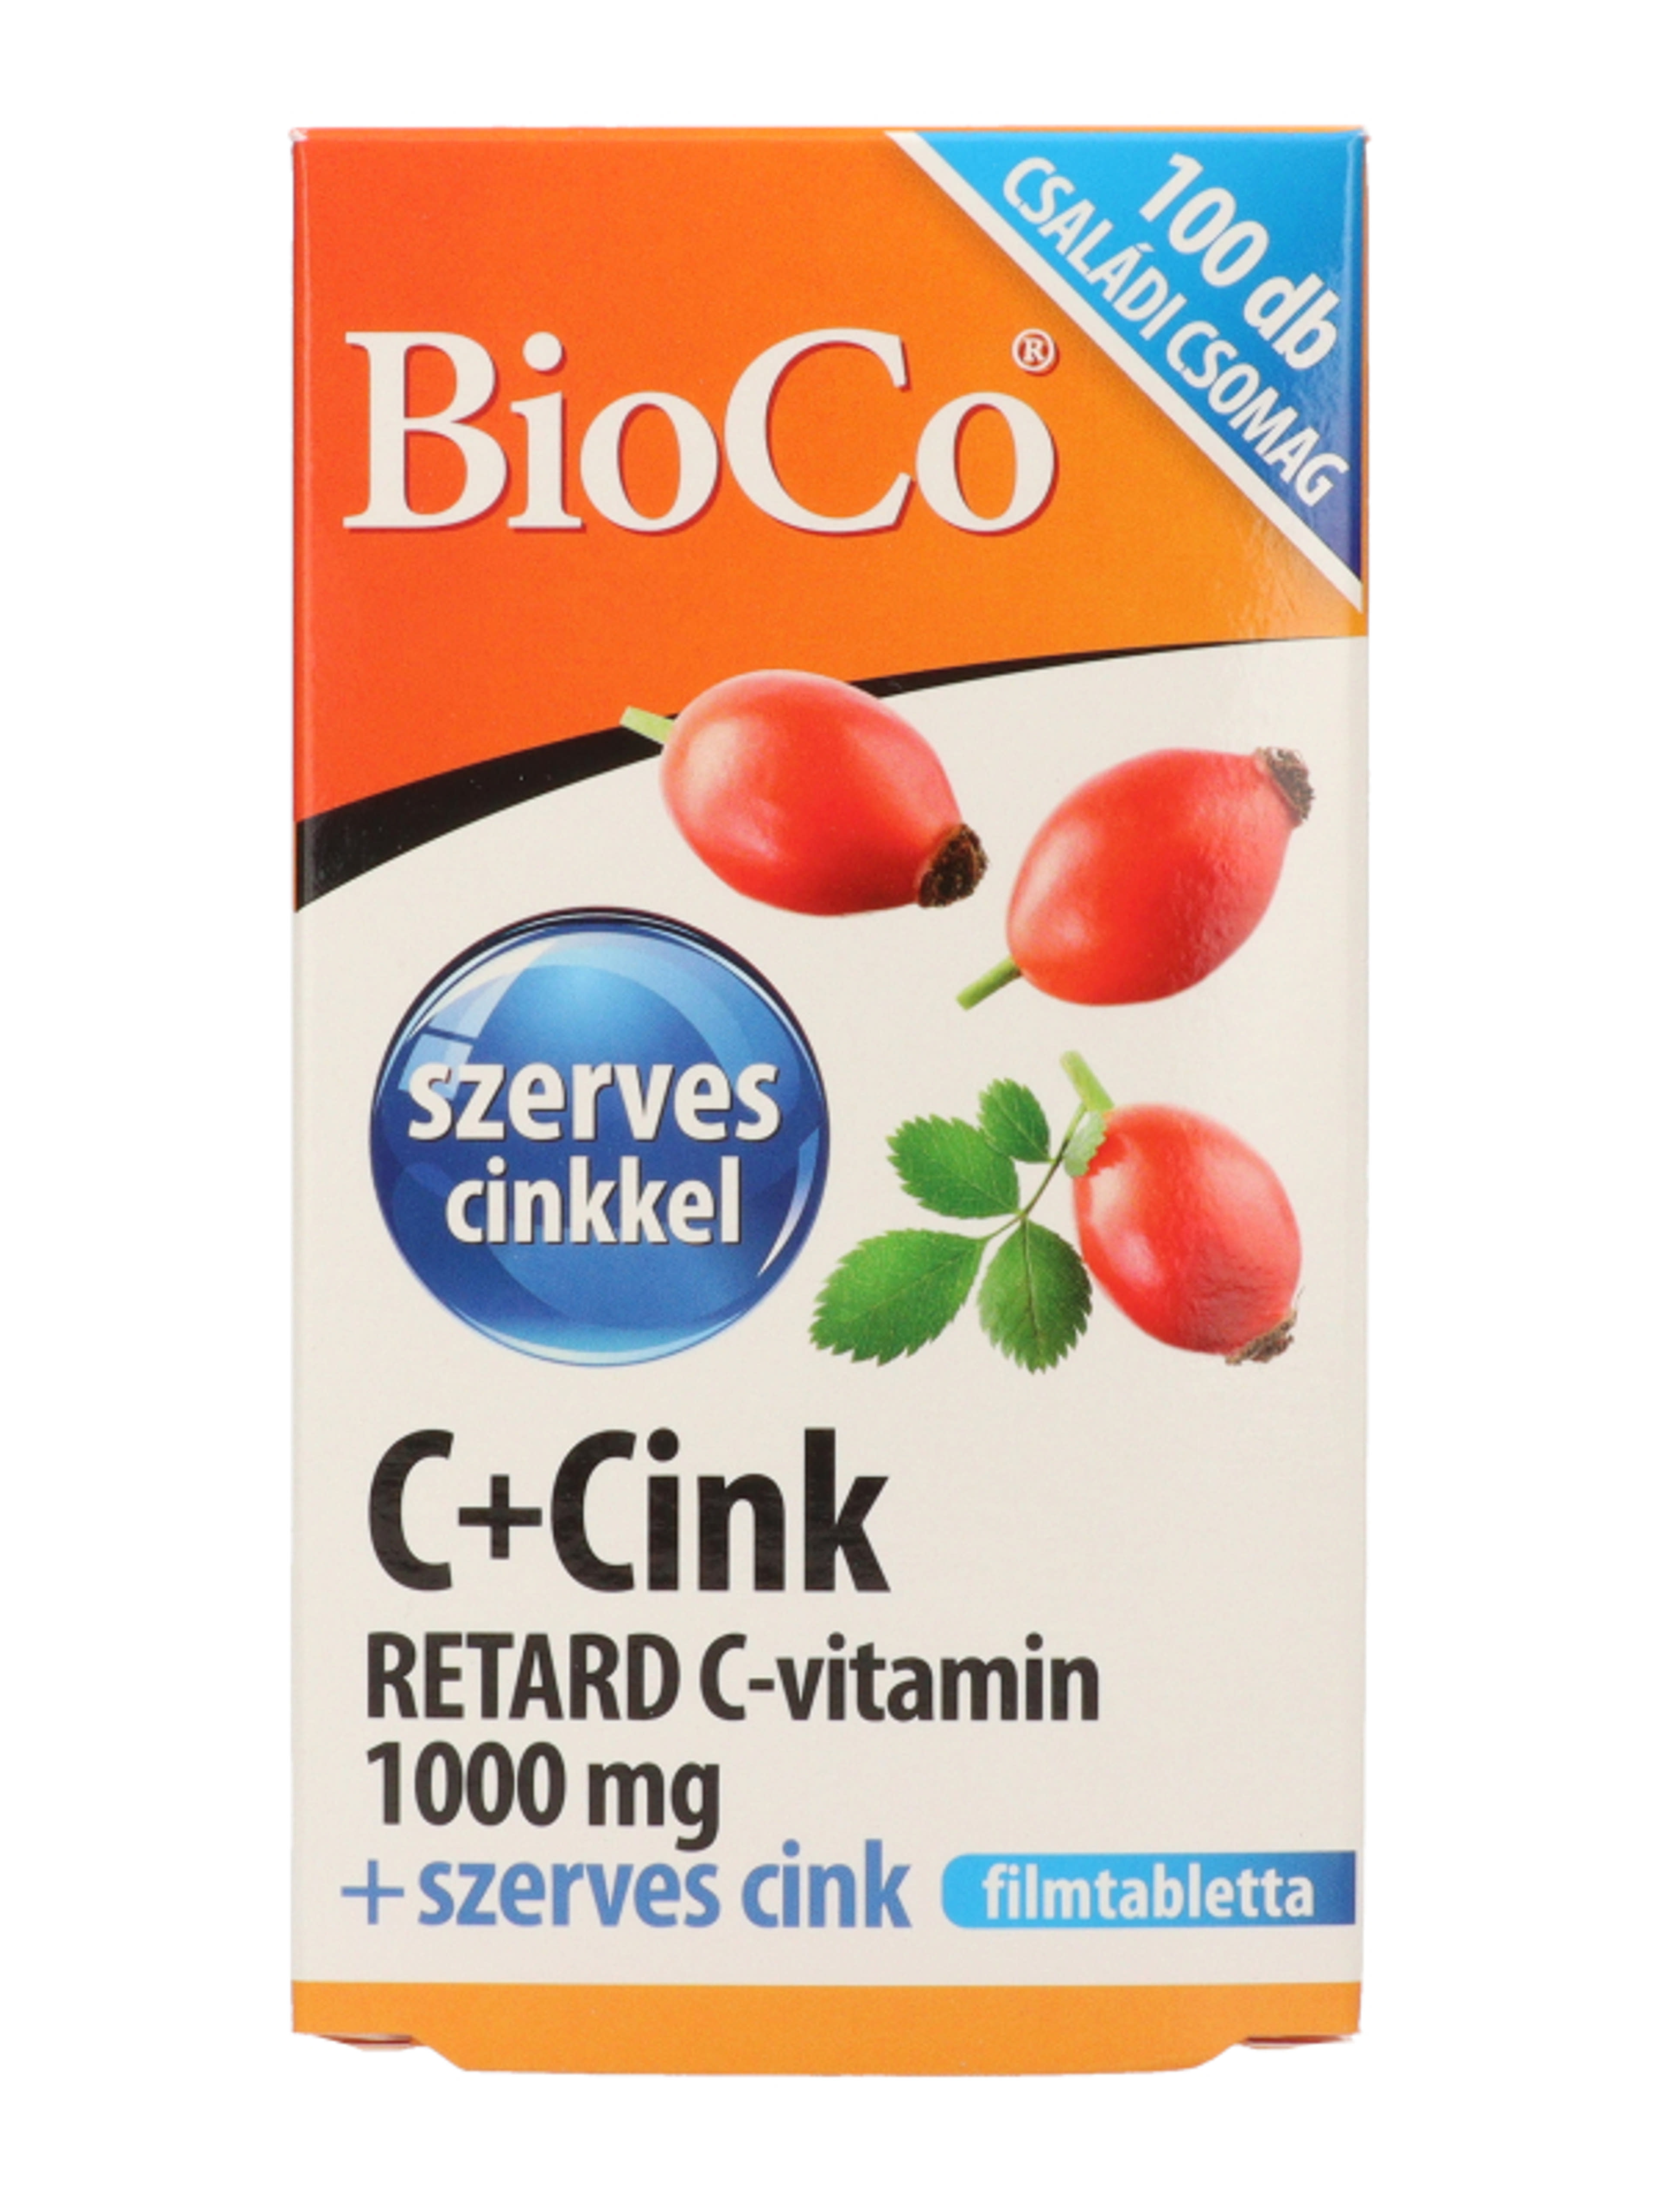 Bioco C+cink retard C-vitamin 1000 mg filmtabletta - 100 db-3